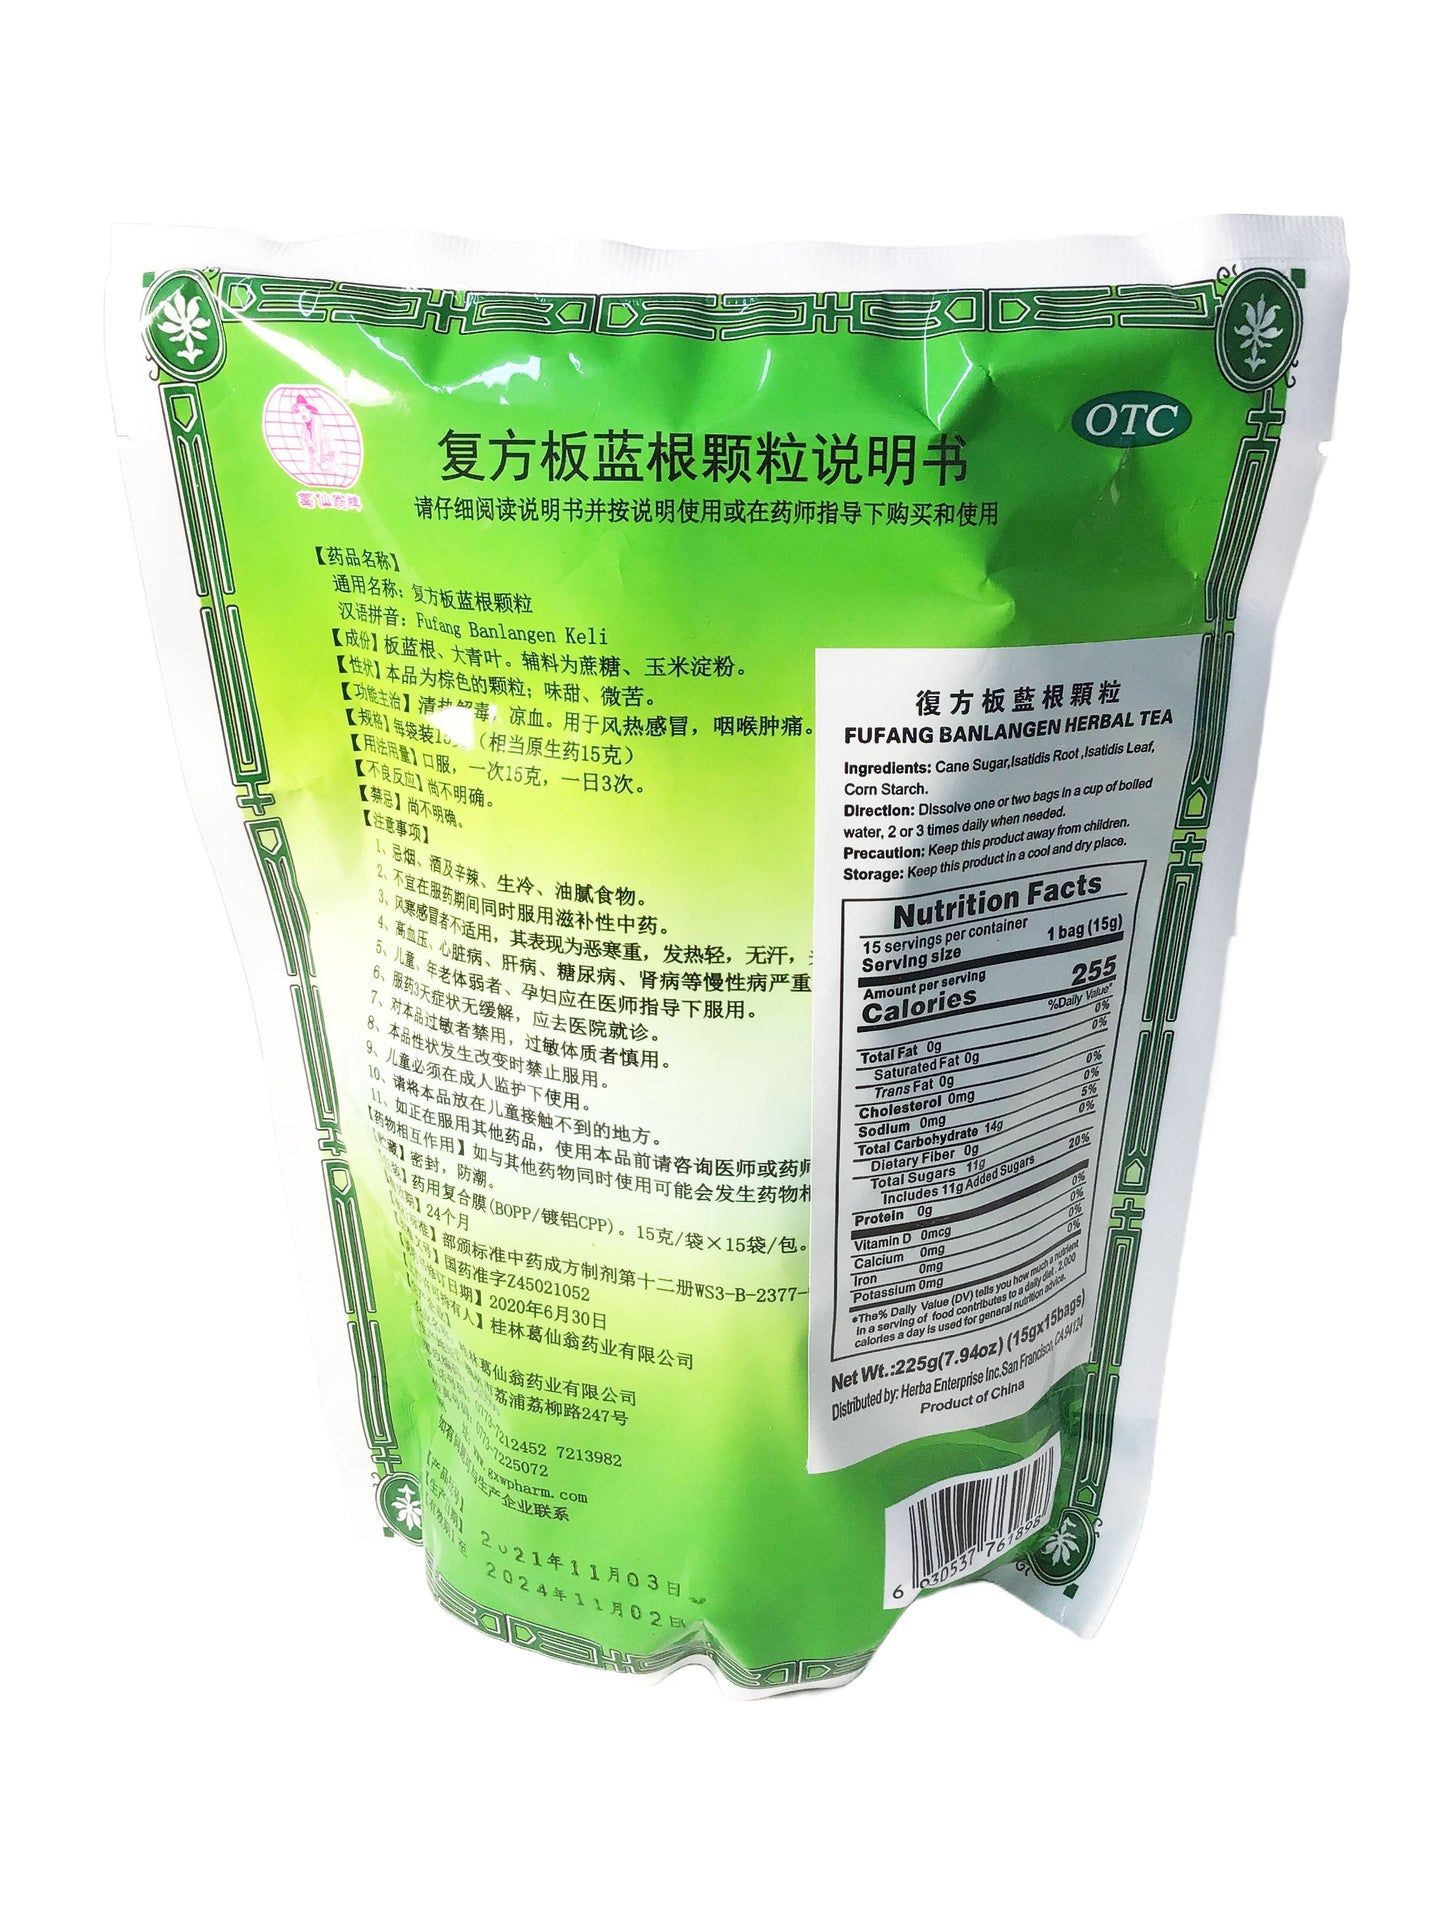 Fufang Banlangen Keli (15 grams x 15 bags) 葛仙翁 复方板蓝根颗粒 (15克 x 15包)